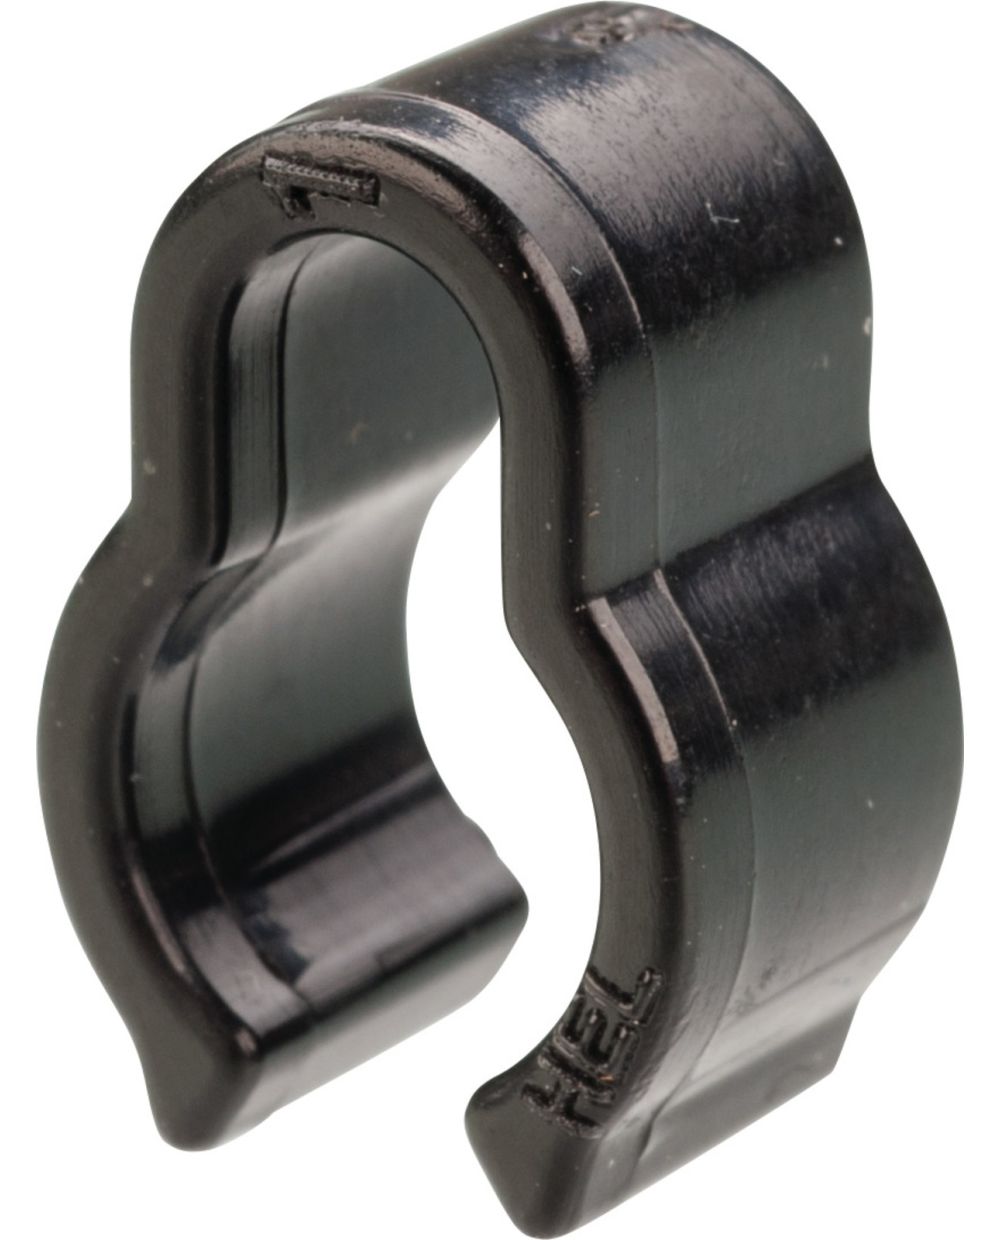 Bremsleitungsclip, befestigt ein Kabel (ABS, Tacho, Blinker etc.) entlang  einer Bremsleitung/-zug, Kunststoff schwarz, 1 Stück